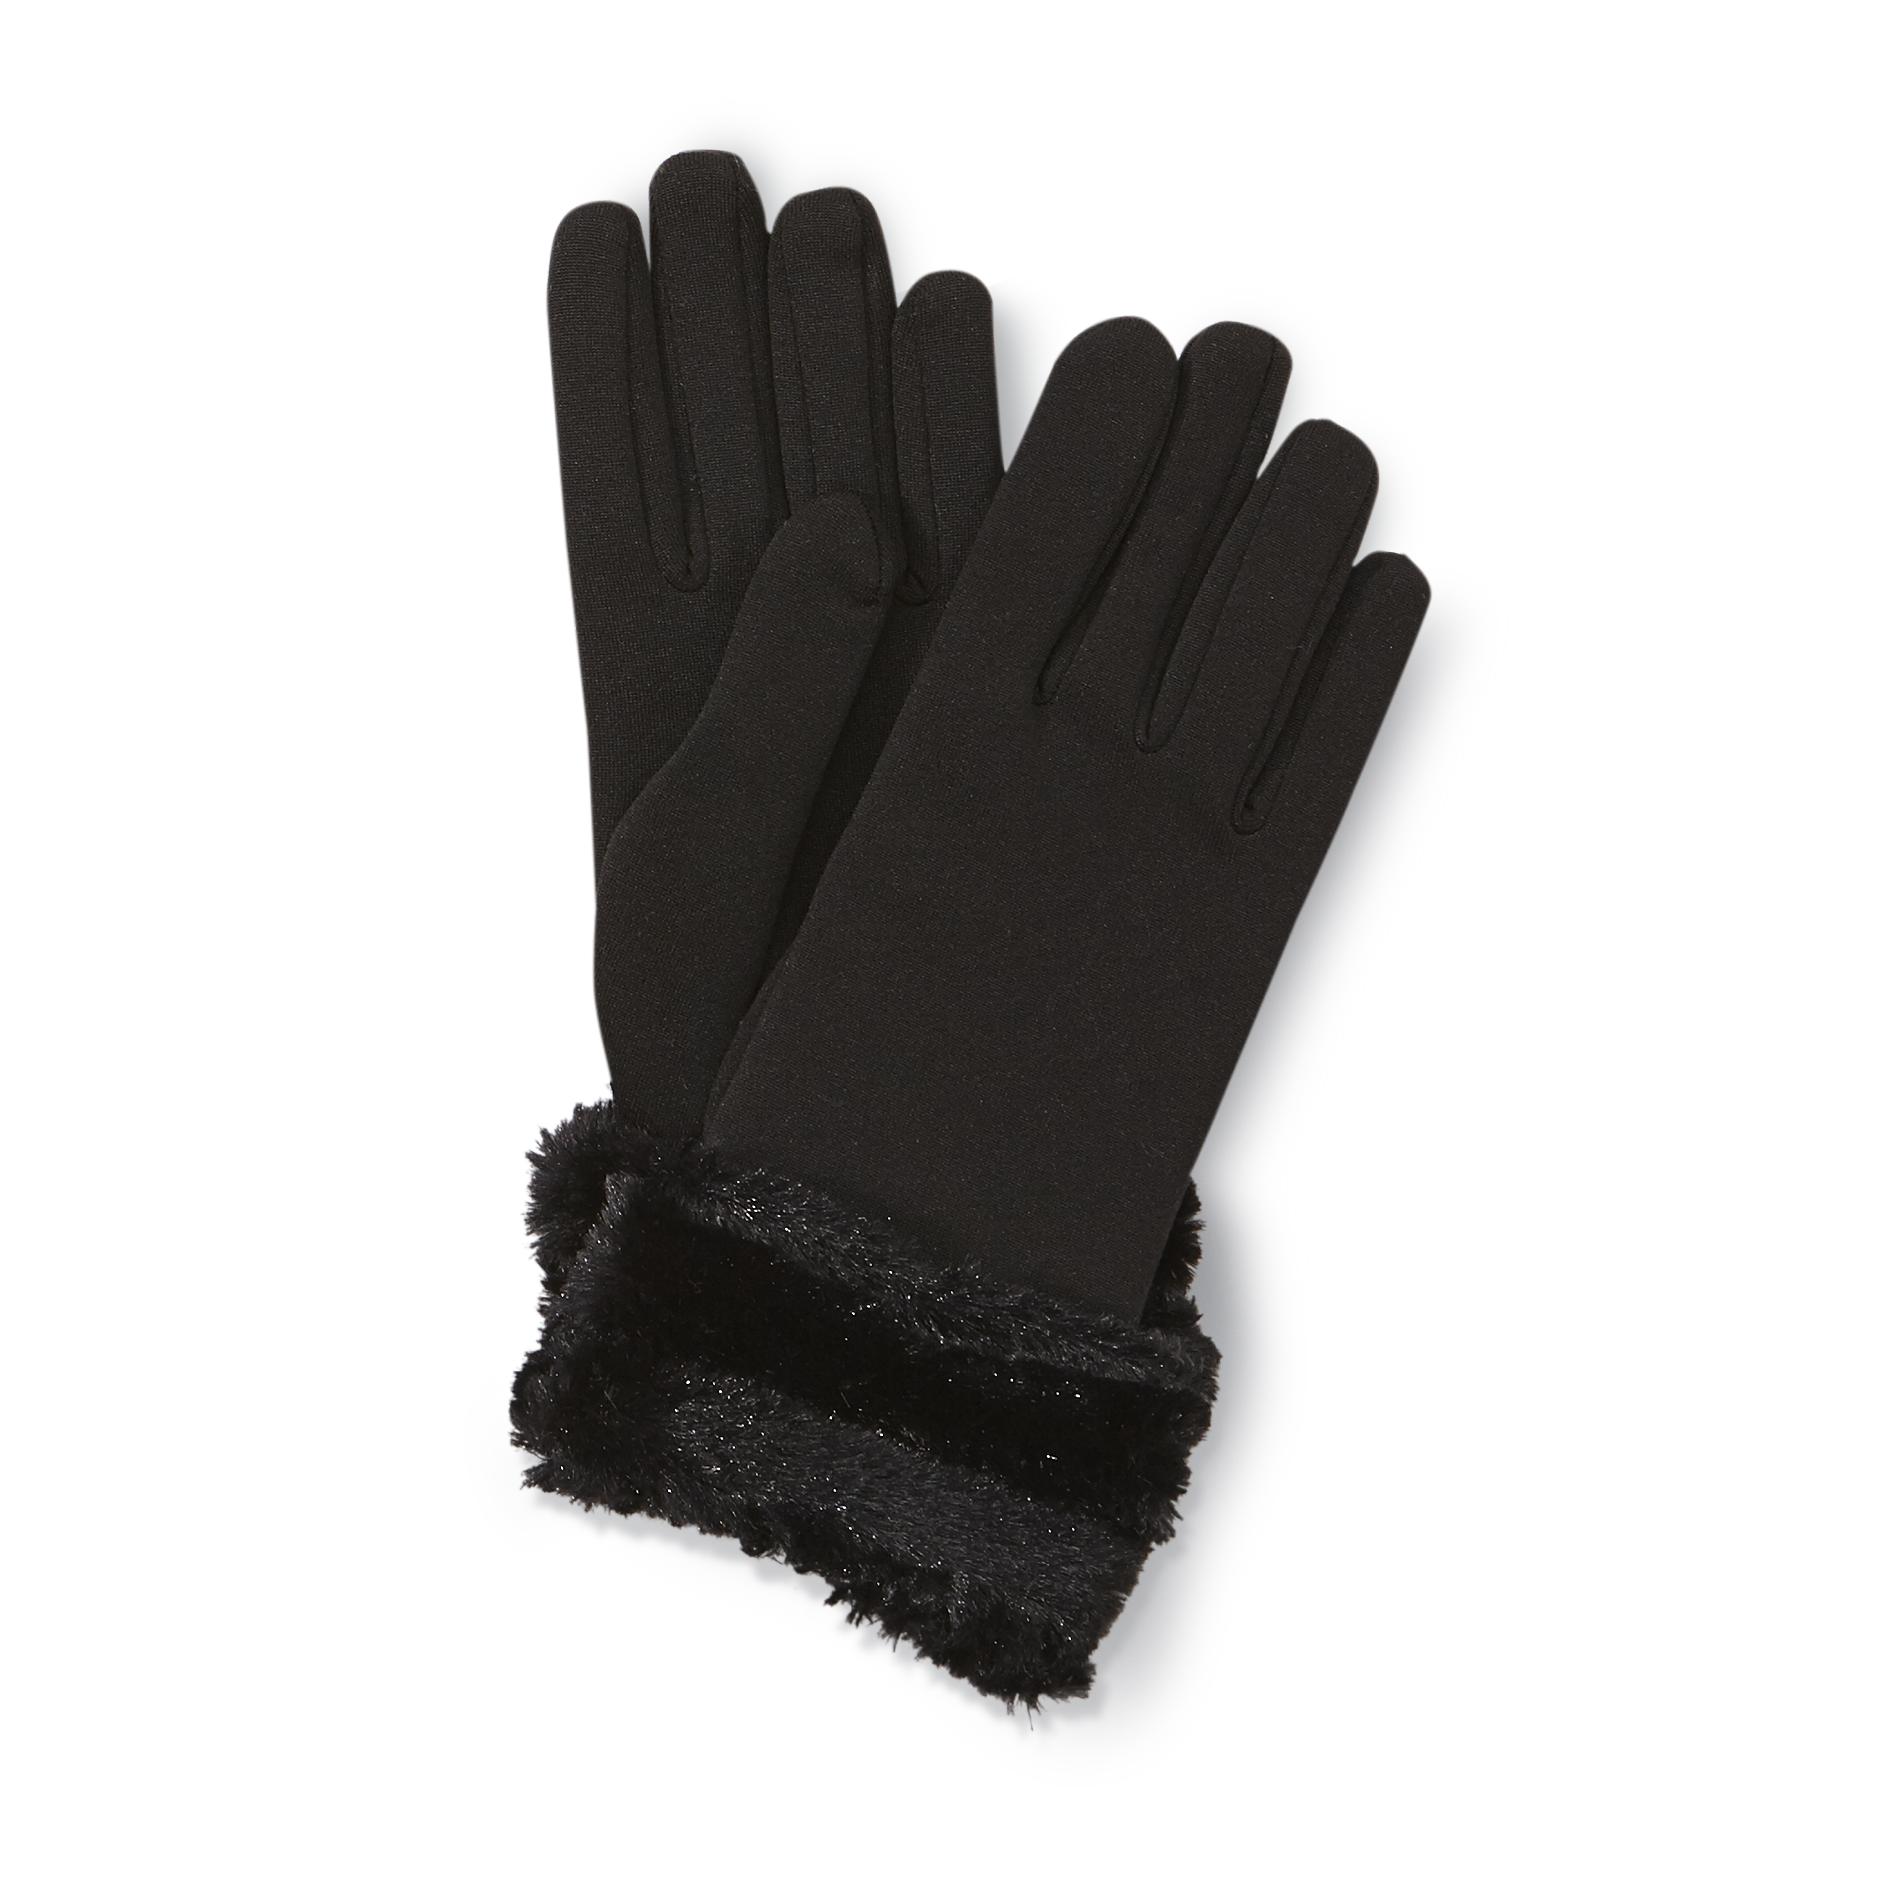 Jaclyn Smith Women's Gloves - Faux Fur Trim